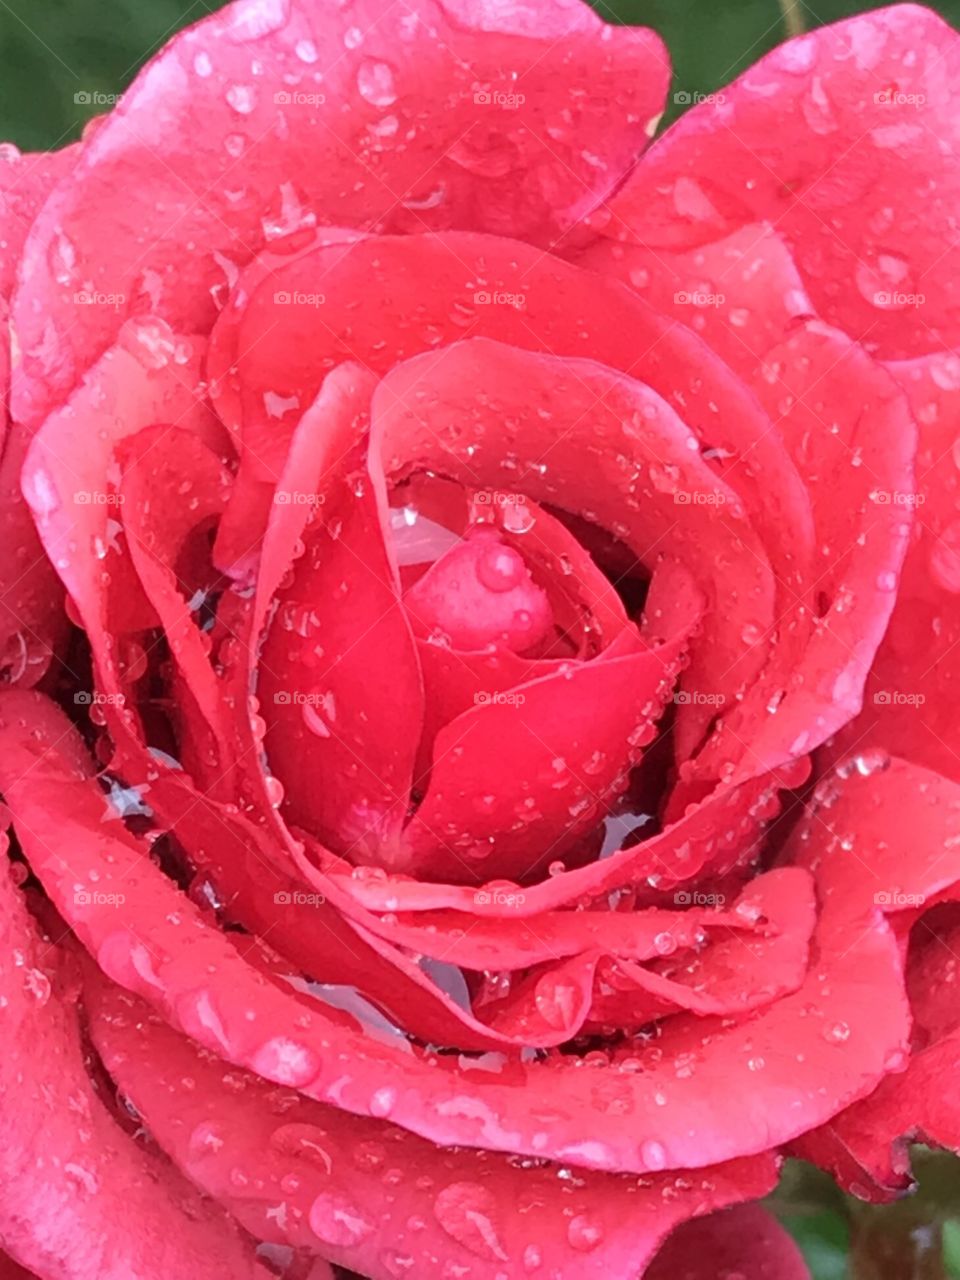 Wet petals of a rose